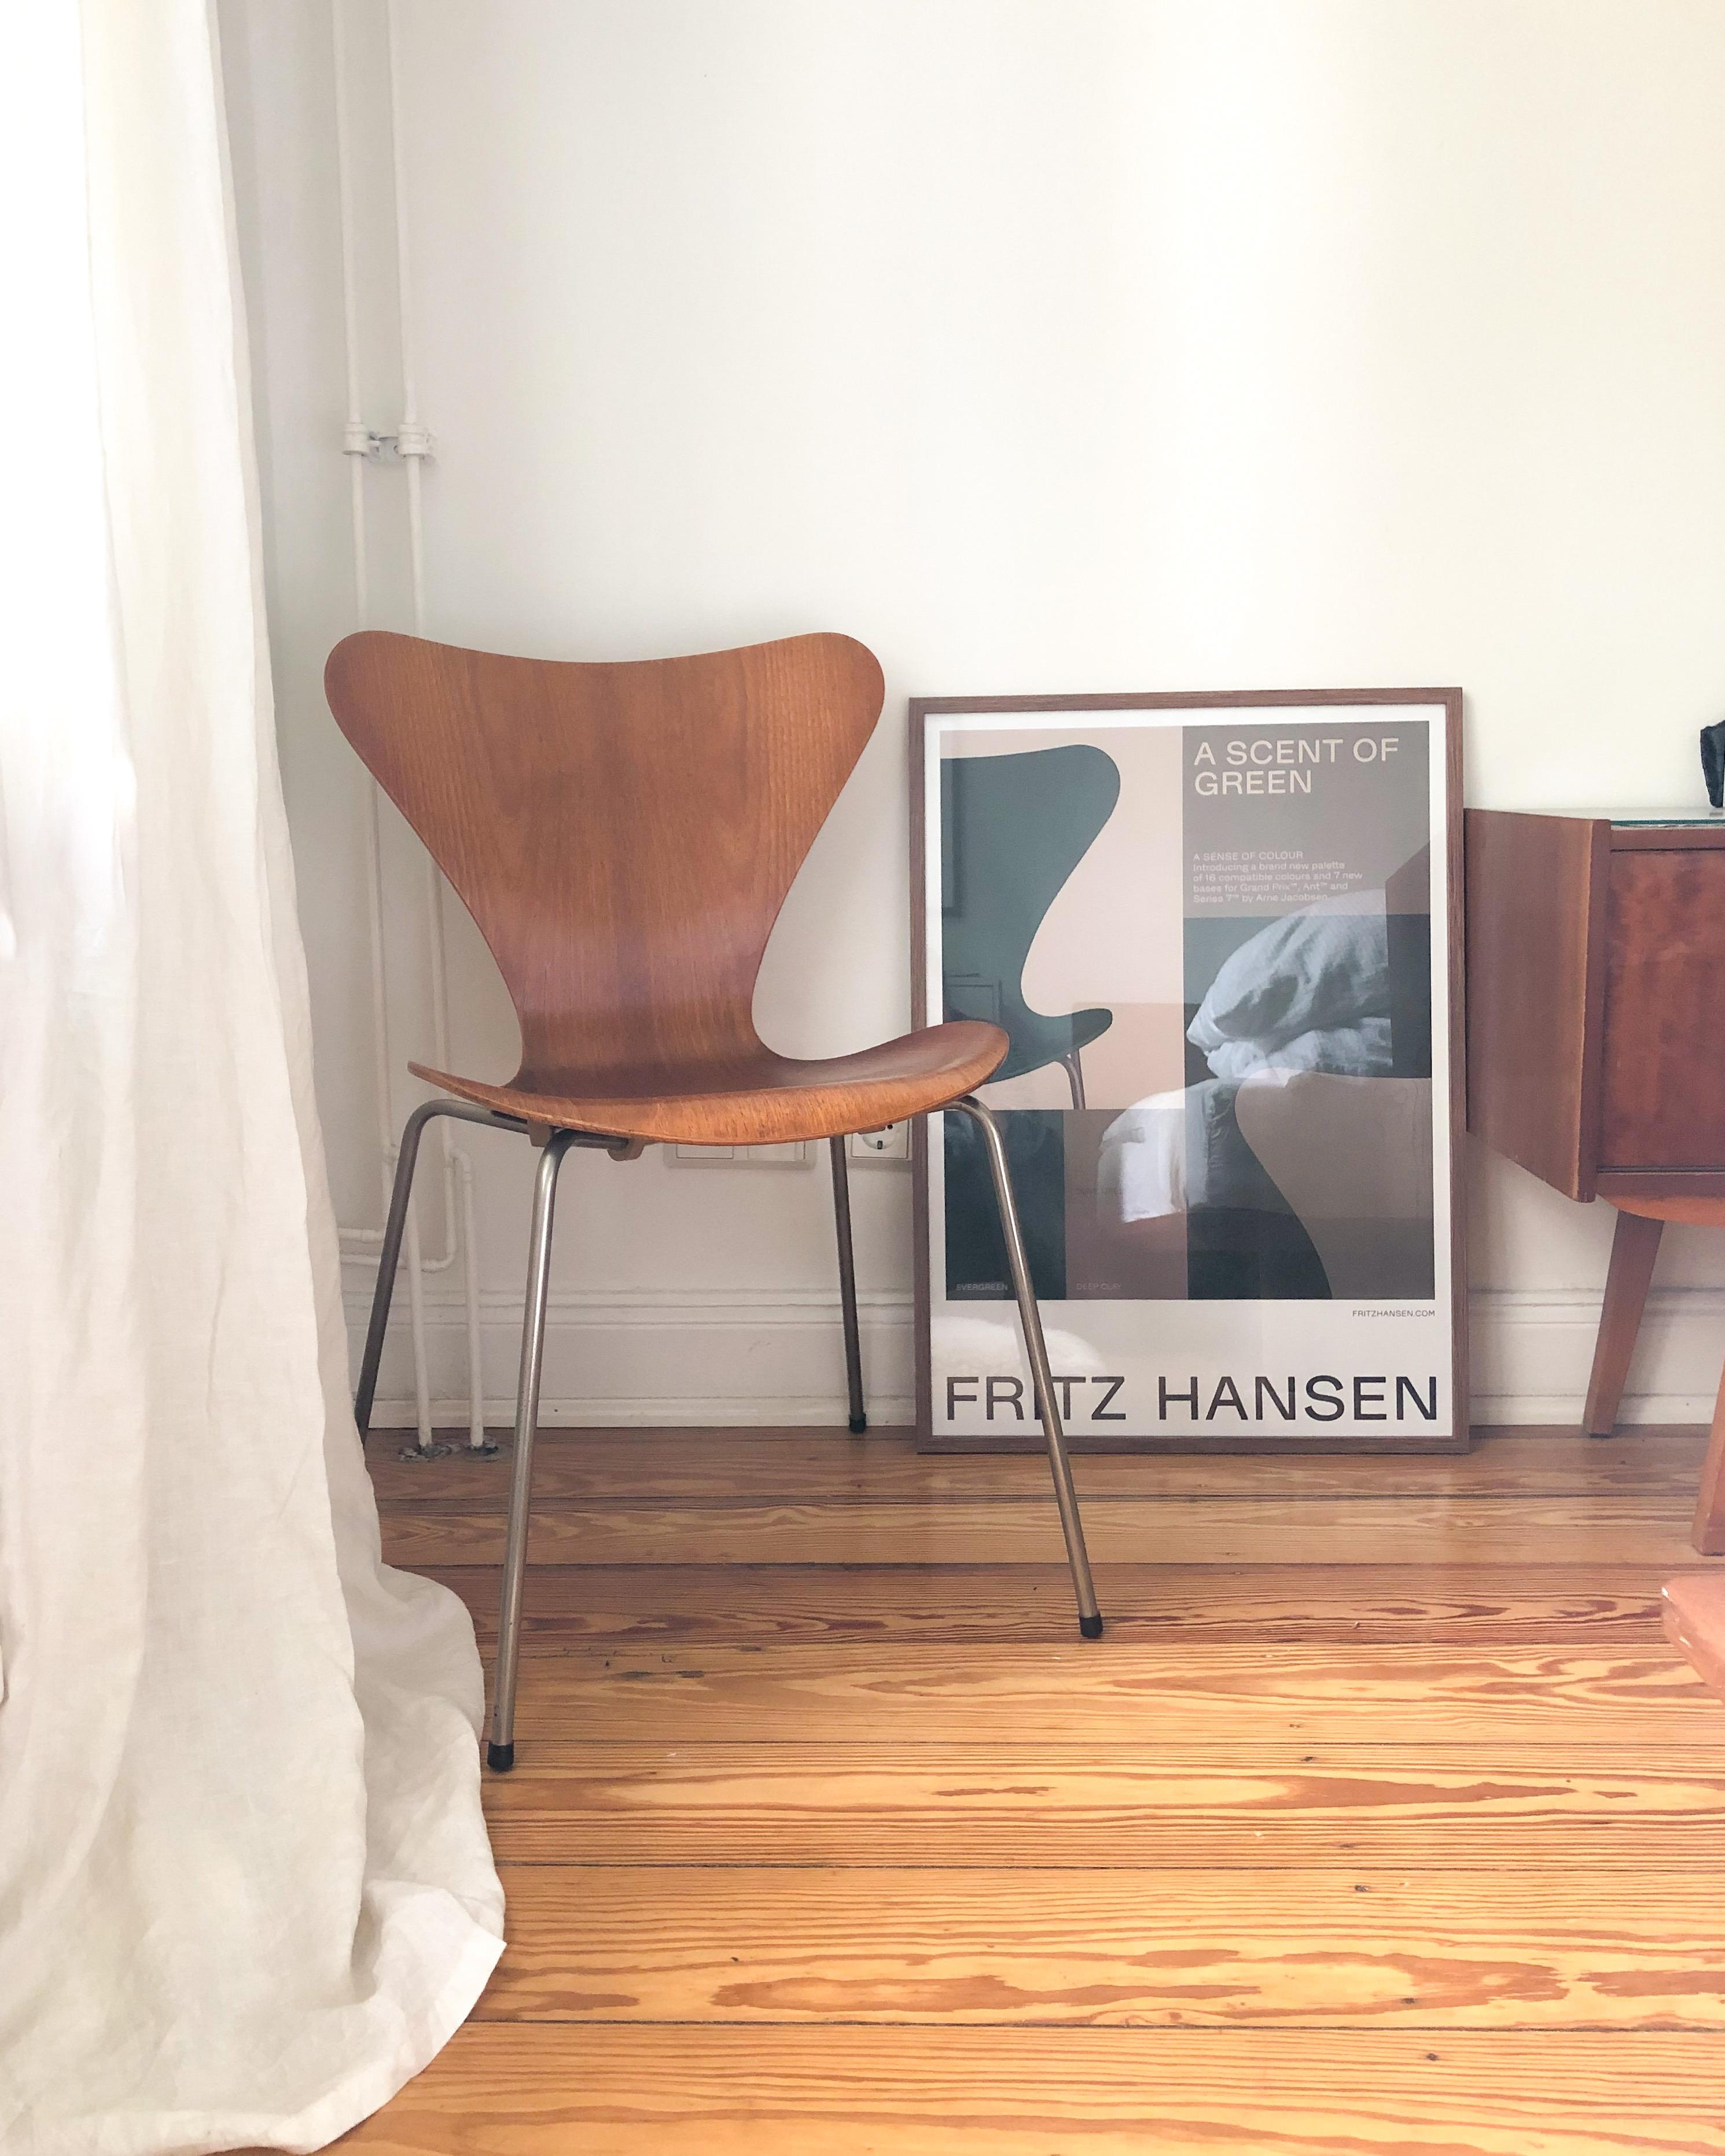 #schlafzimmer #herbst #beige #interior #arnejacobsen #fritzhansen #altbau #cozy #stuhl #sitzplatz